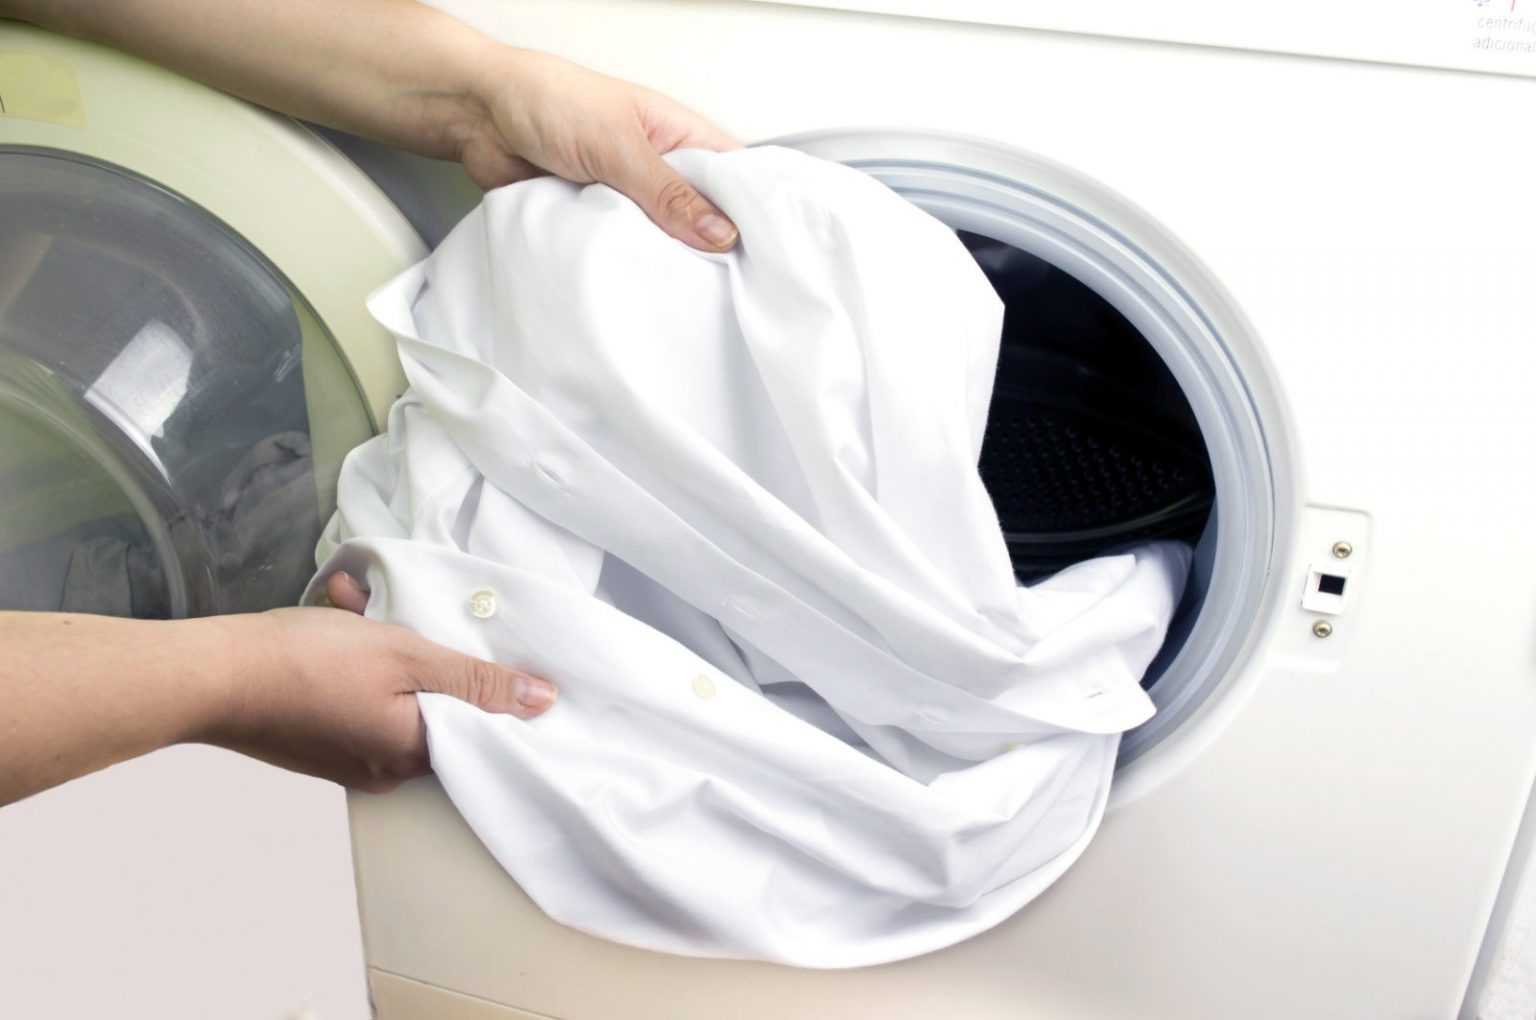 Почему белье после стирки в стиральной машине пахнет затхлым, тухлым или кислым, в чем причина неприятного запаха?